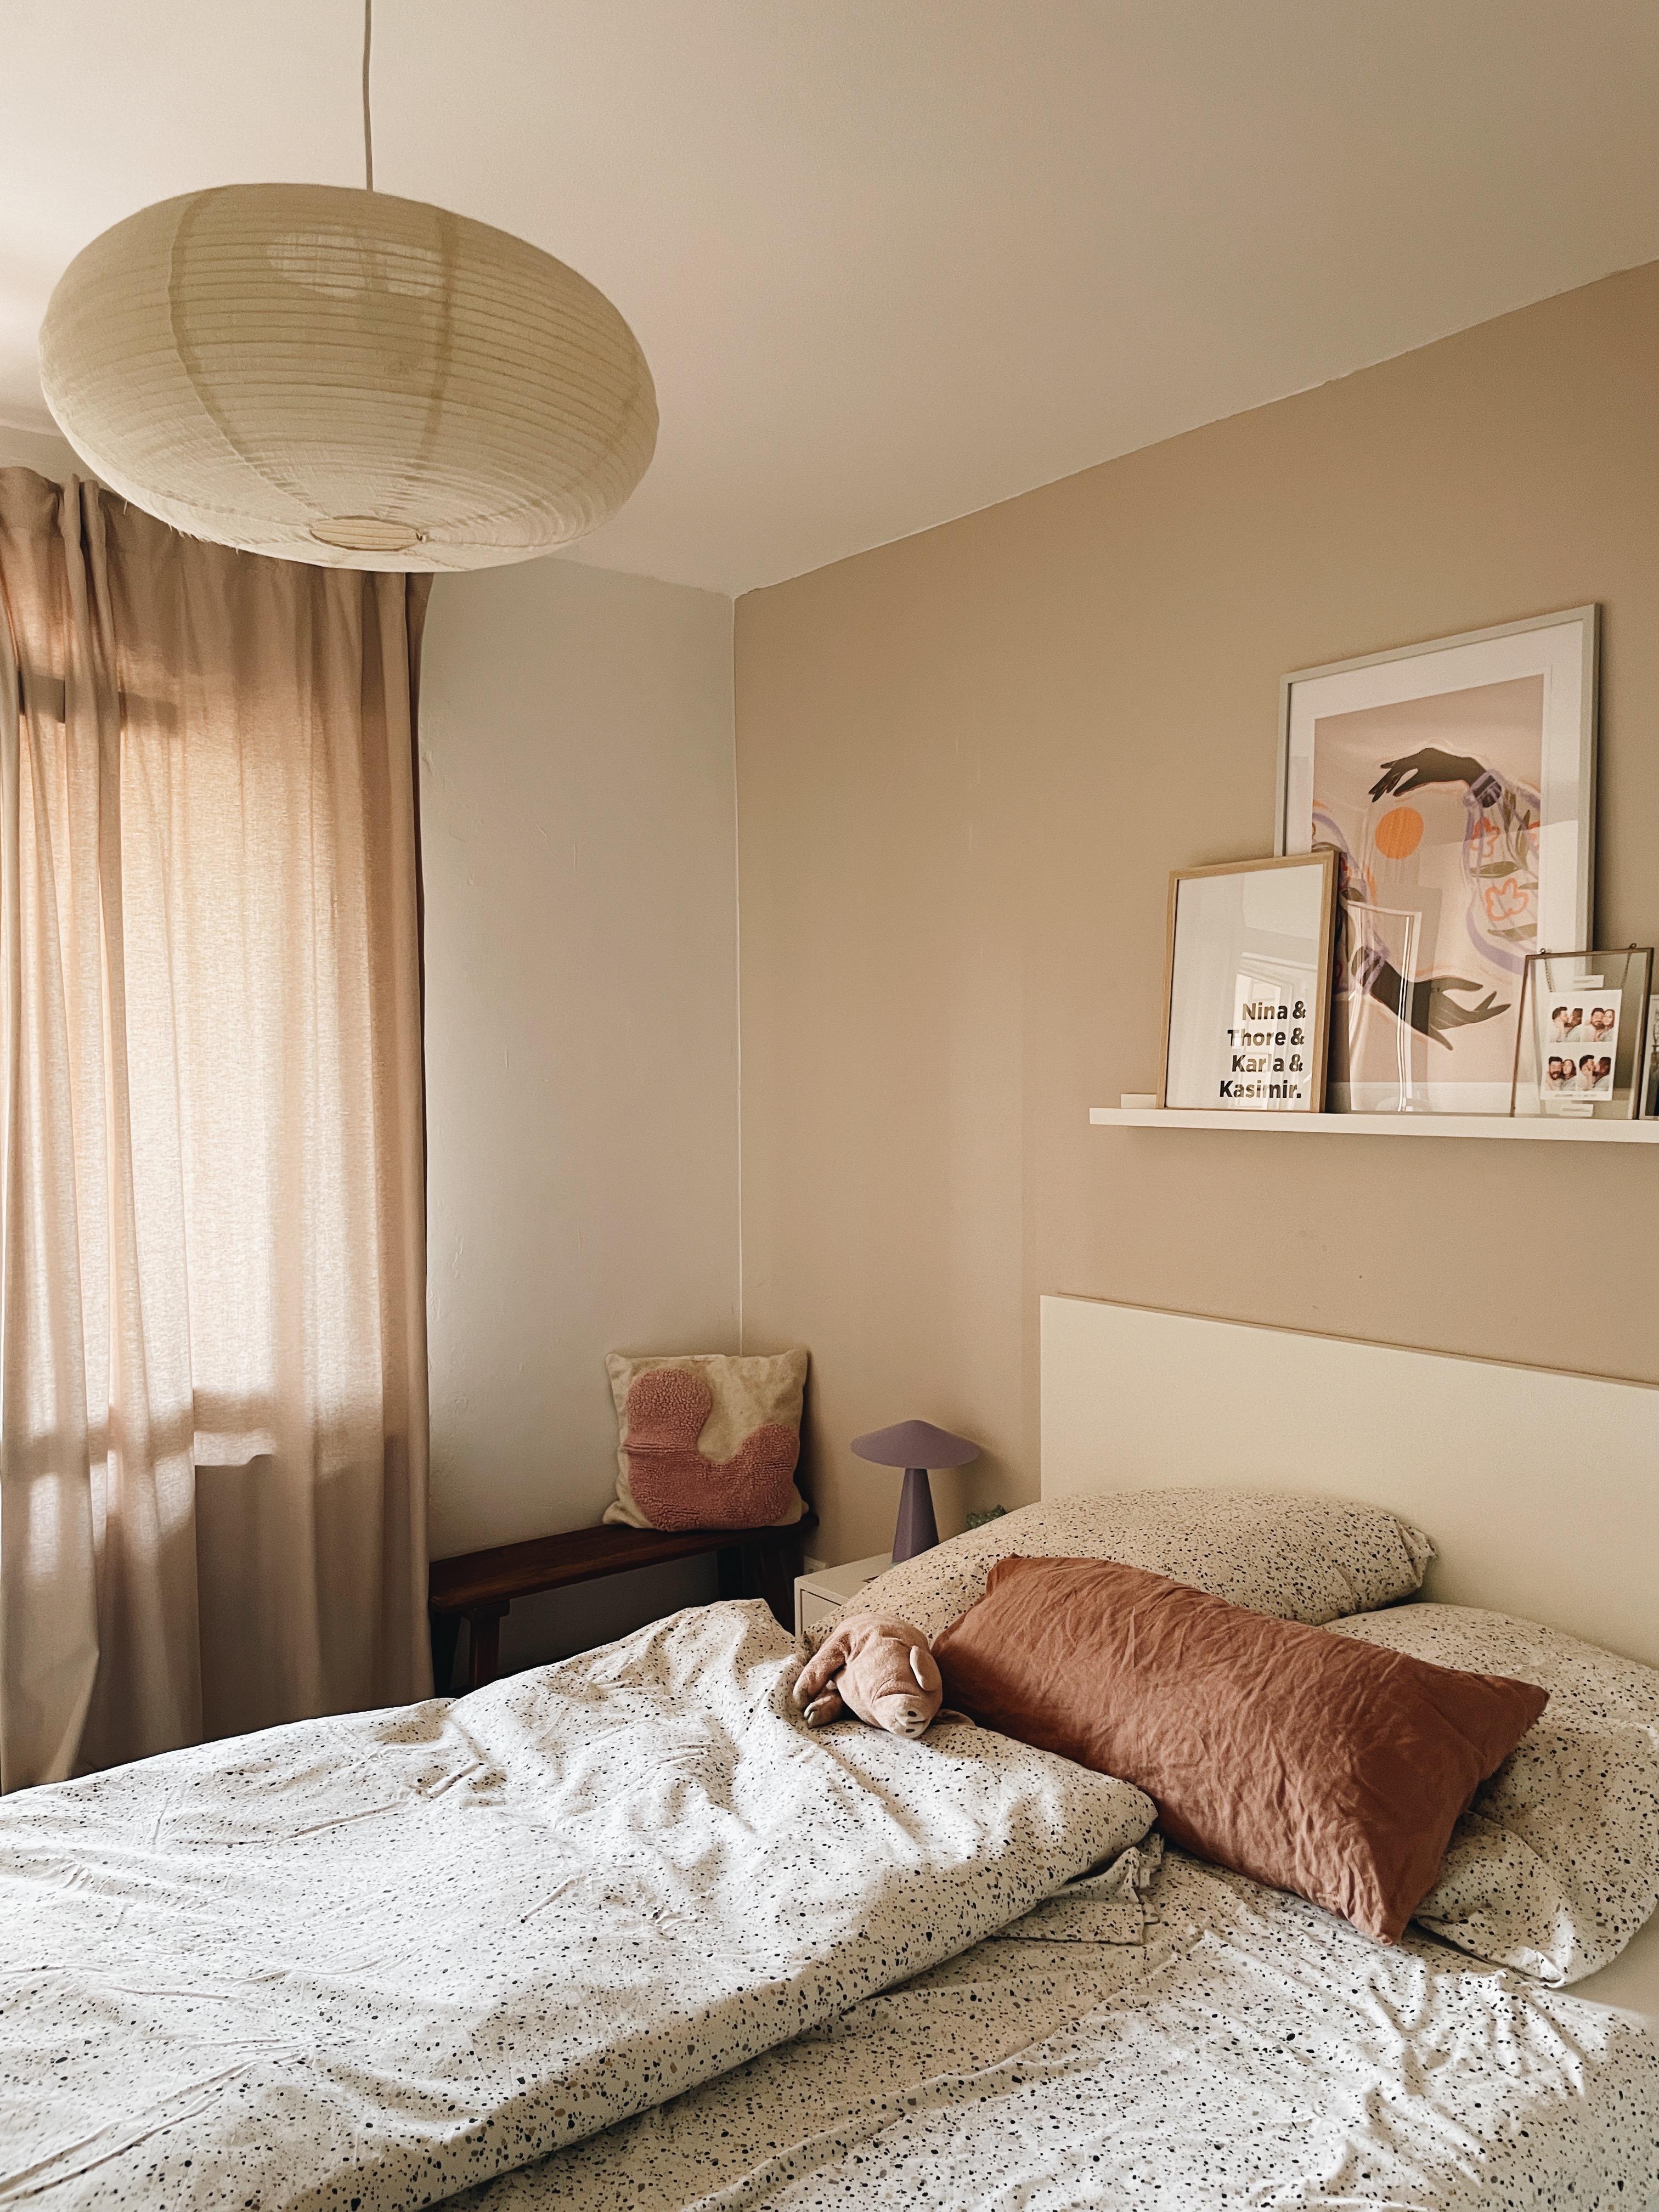 #schlafzimmer #cozy #inspiration #couchliebt #bett 